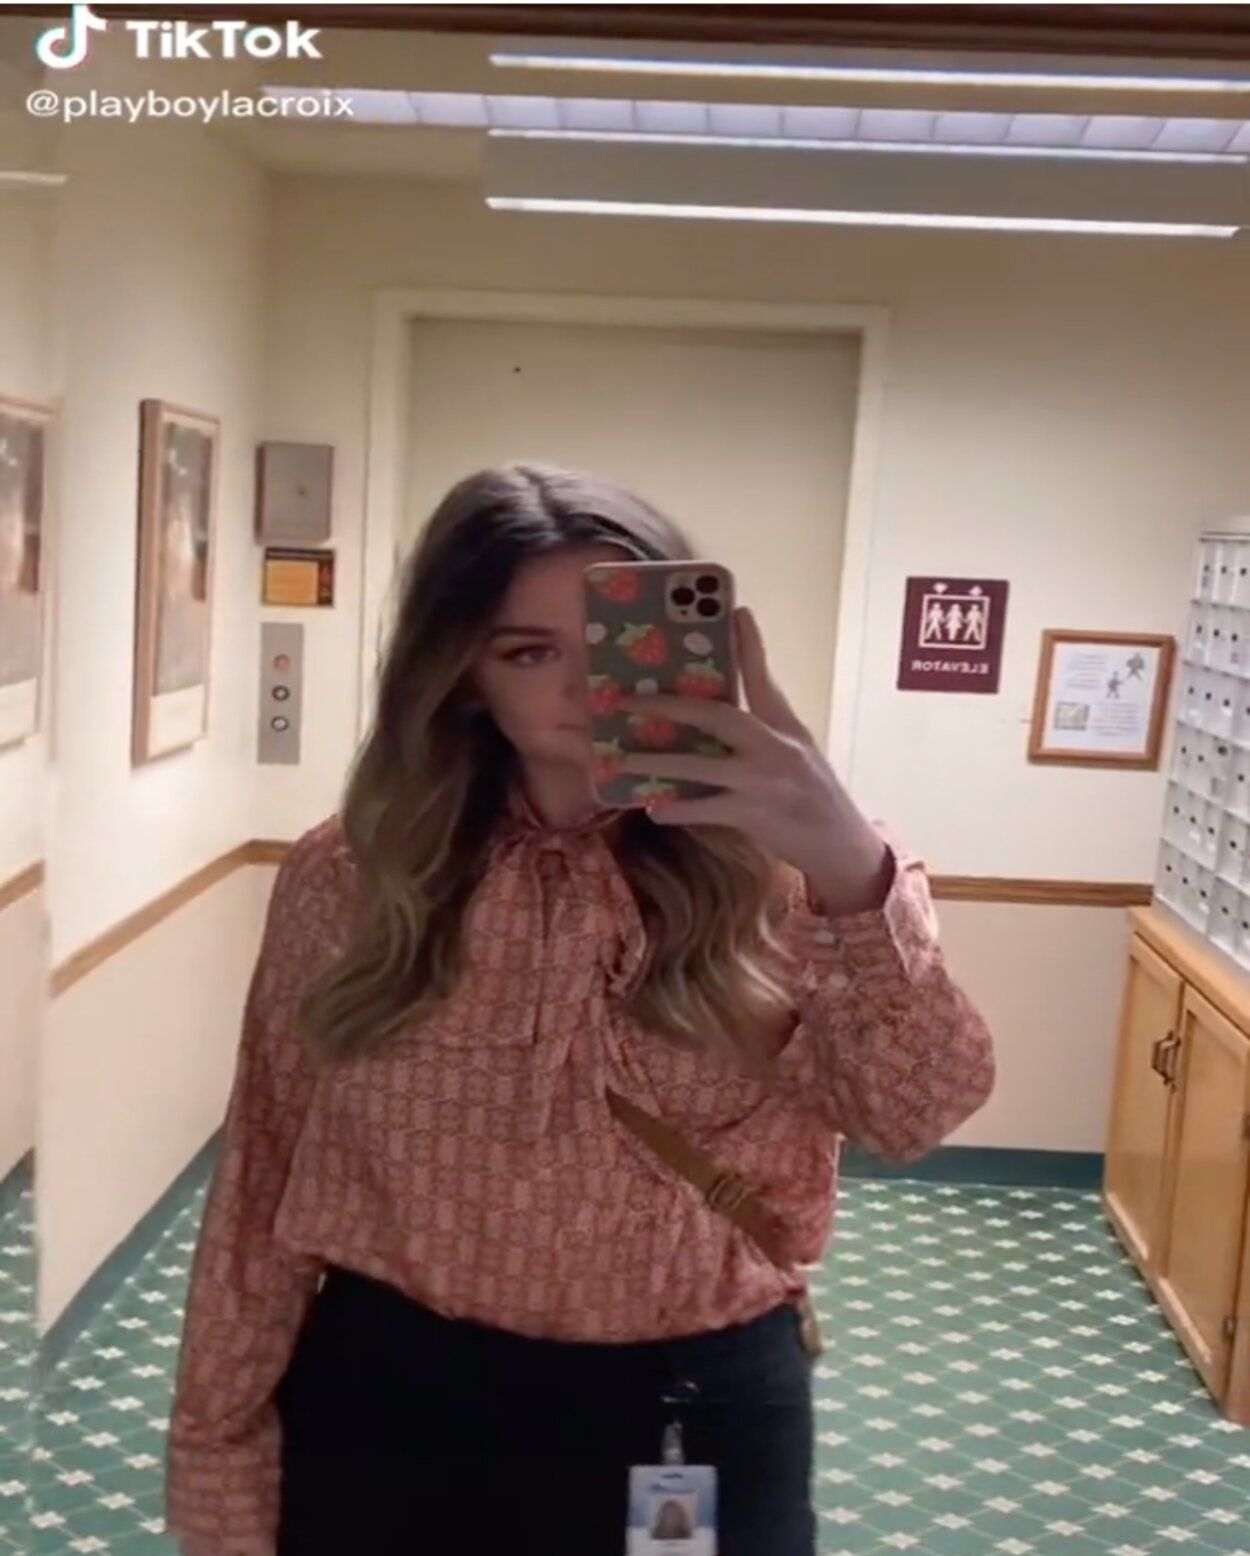 VÍDEO: Una joven de 21 años comparte su día a día viviendo en un apartamento para mayores